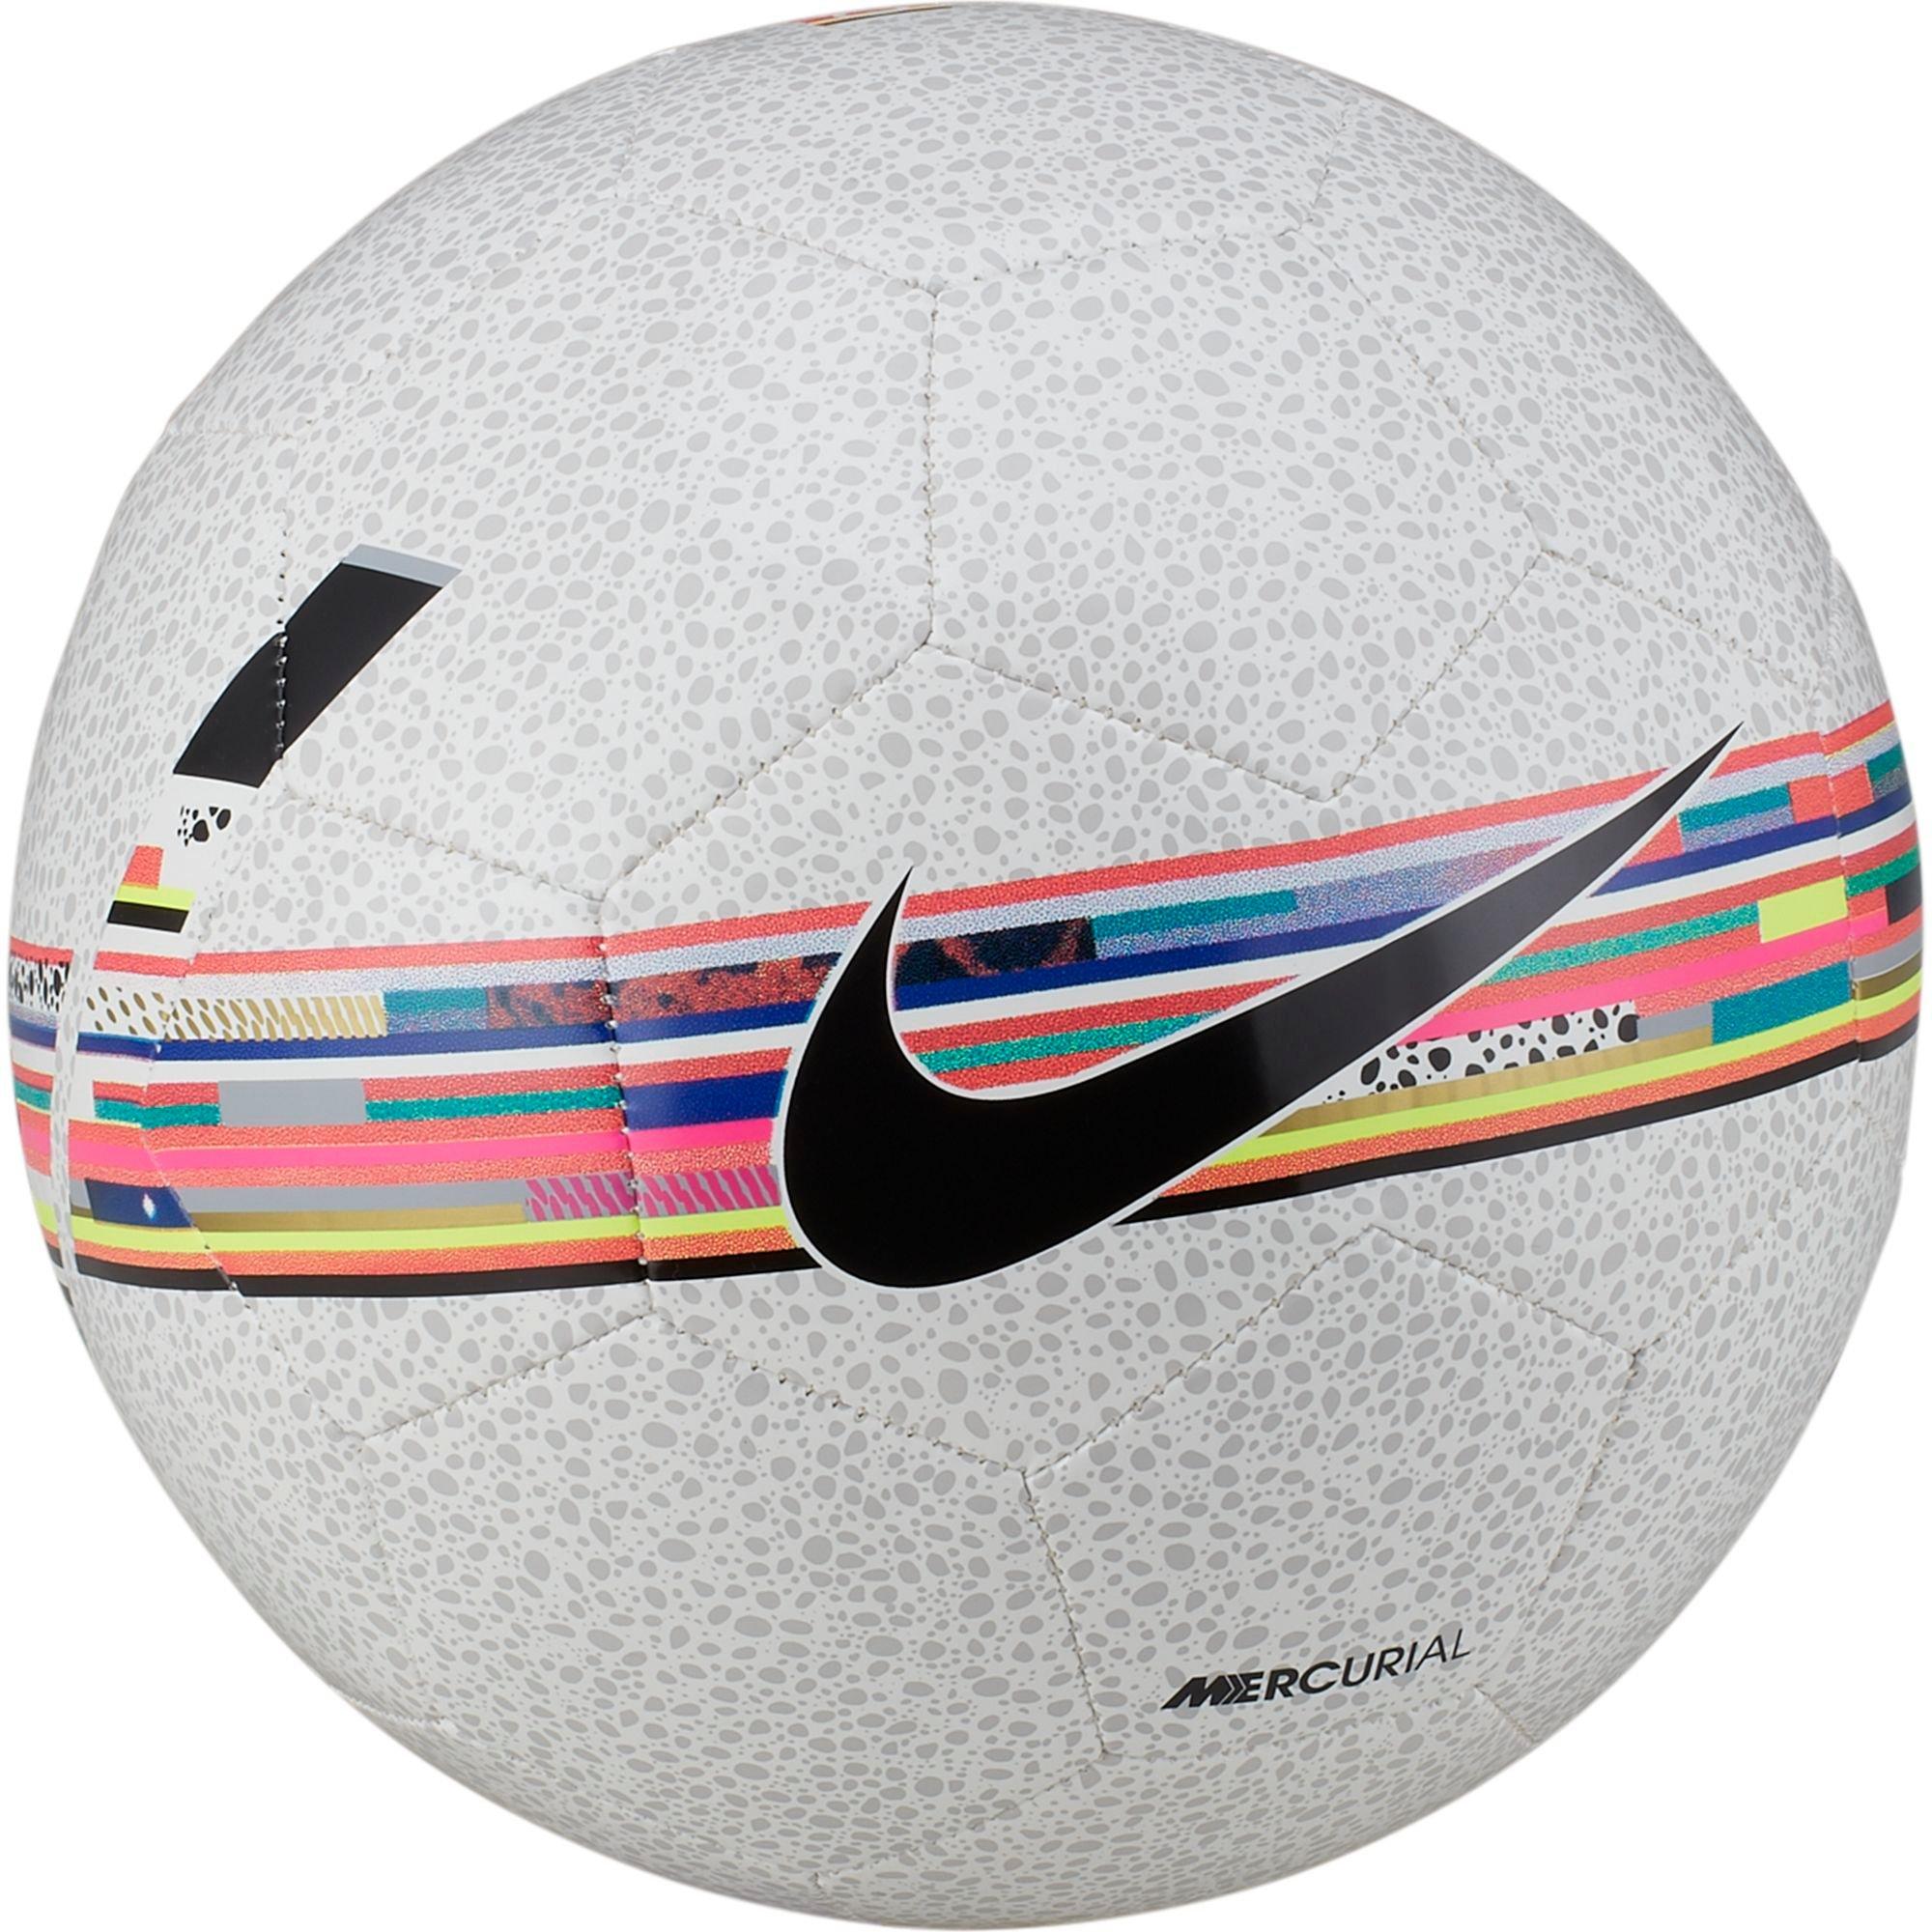 cr7 soccer balls